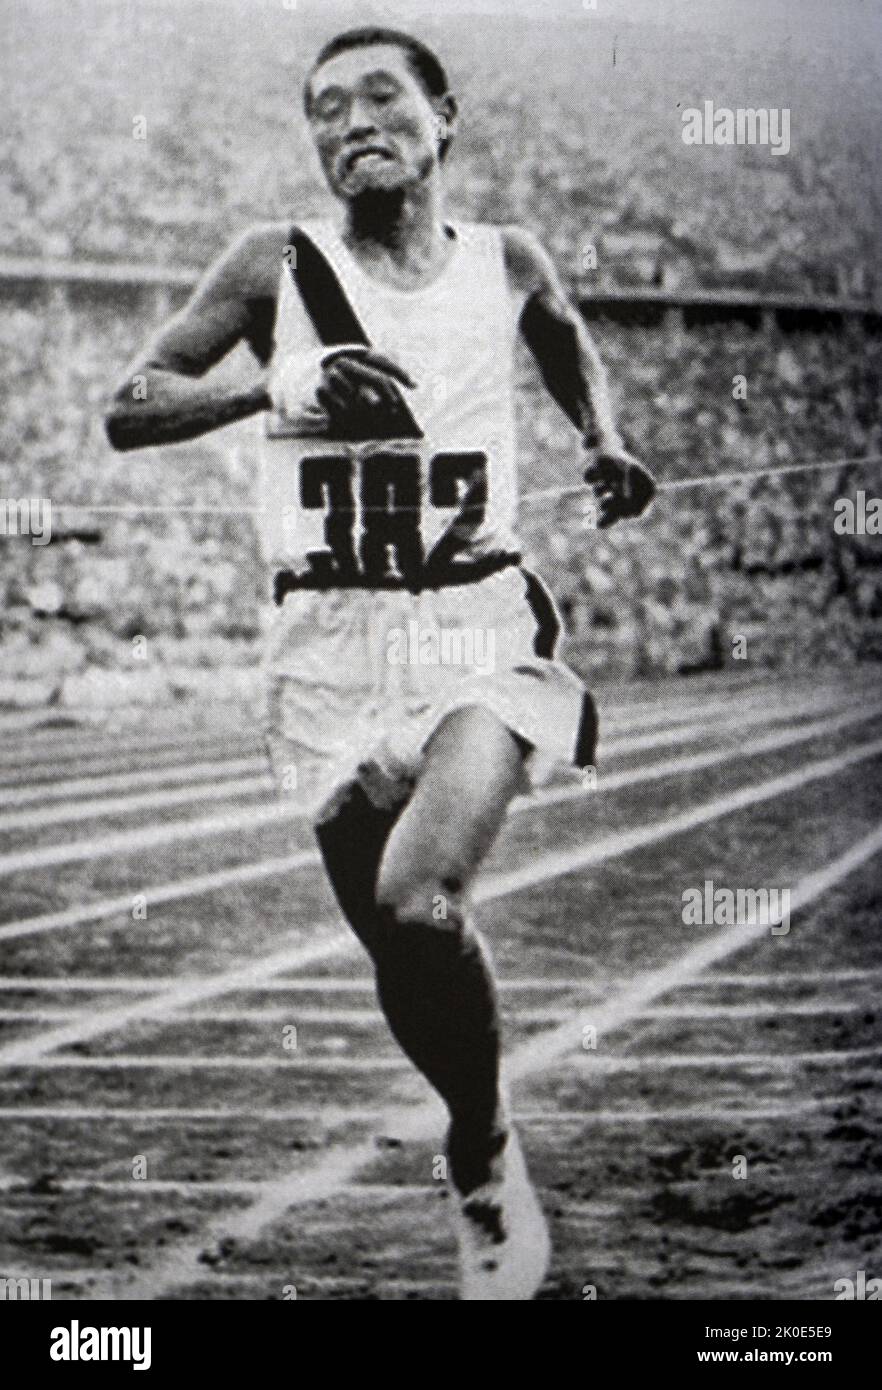 Sohn Kee-Chung (29. August 1912 - 15. November 2002) war Olympiateilnehmer und Langstreckenläufer. Als erster ethnischer Koreaner gewann er bei den Olympischen Spielen eine Medaille und gewann bei den Olympischen Spielen in Berlin 1936 Gold im Marathon. Stockfoto